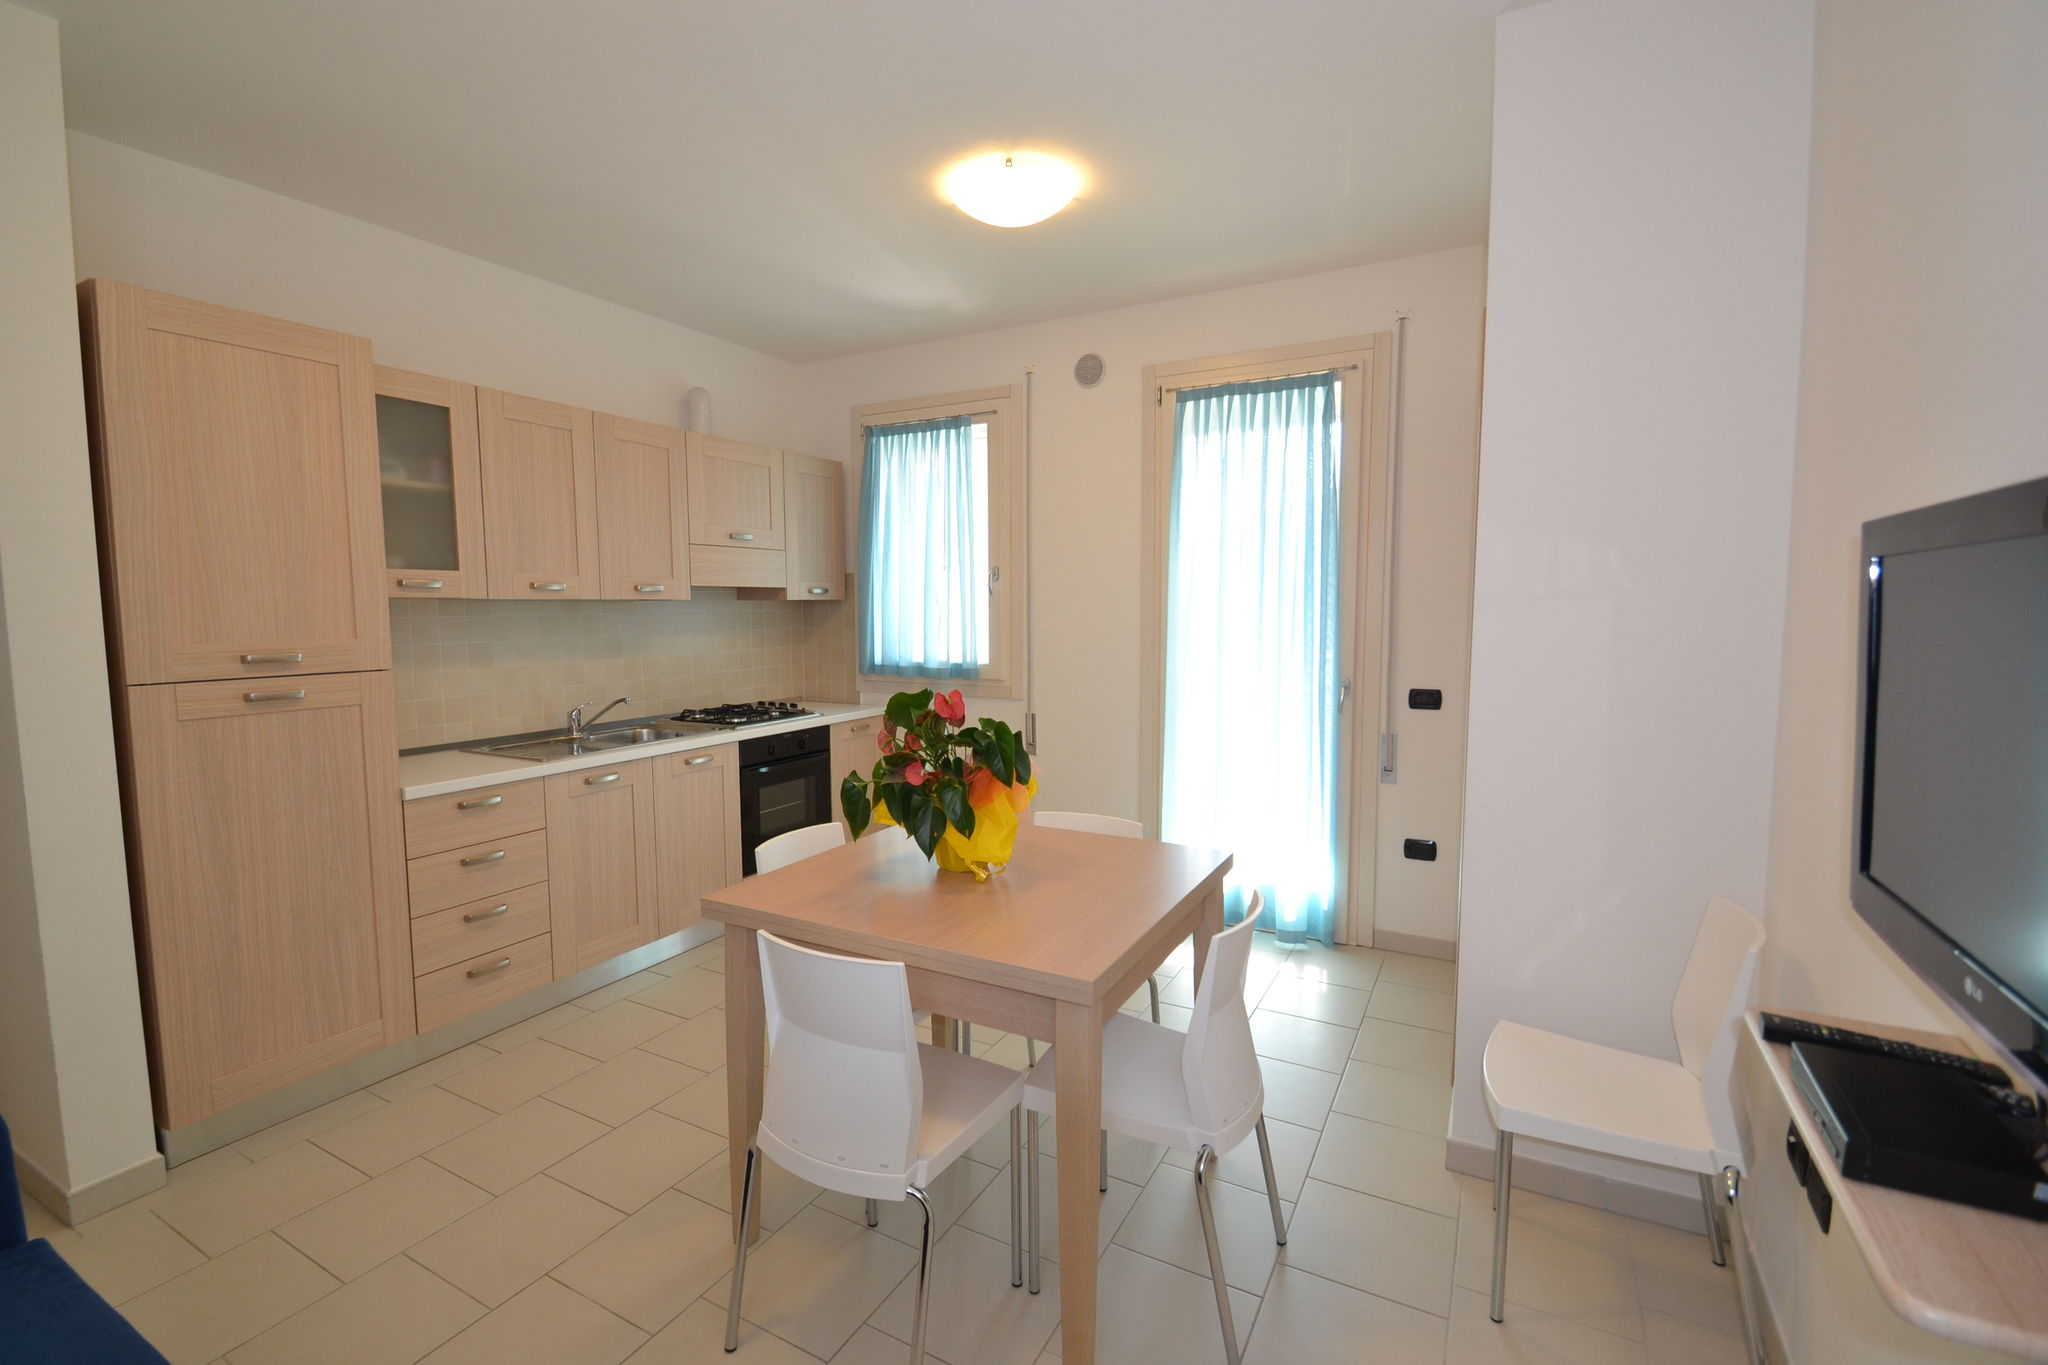 Appartement 5 personnes situé près de la mer à Rosolina Mare